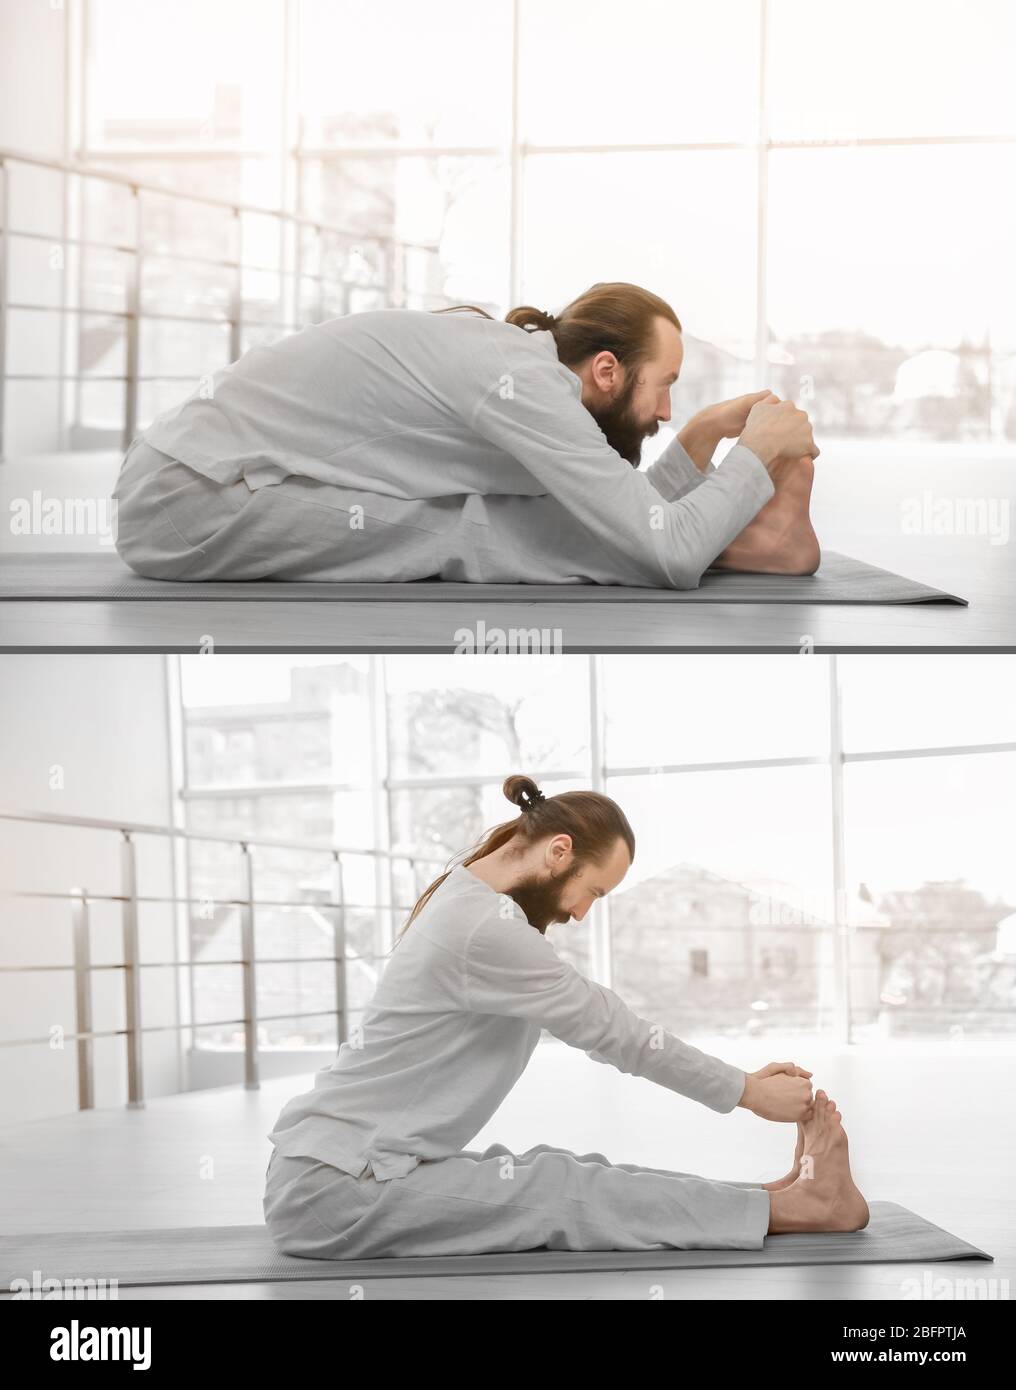 Hombre En Posición De Yoga Fotos, retratos, imágenes y fotografía